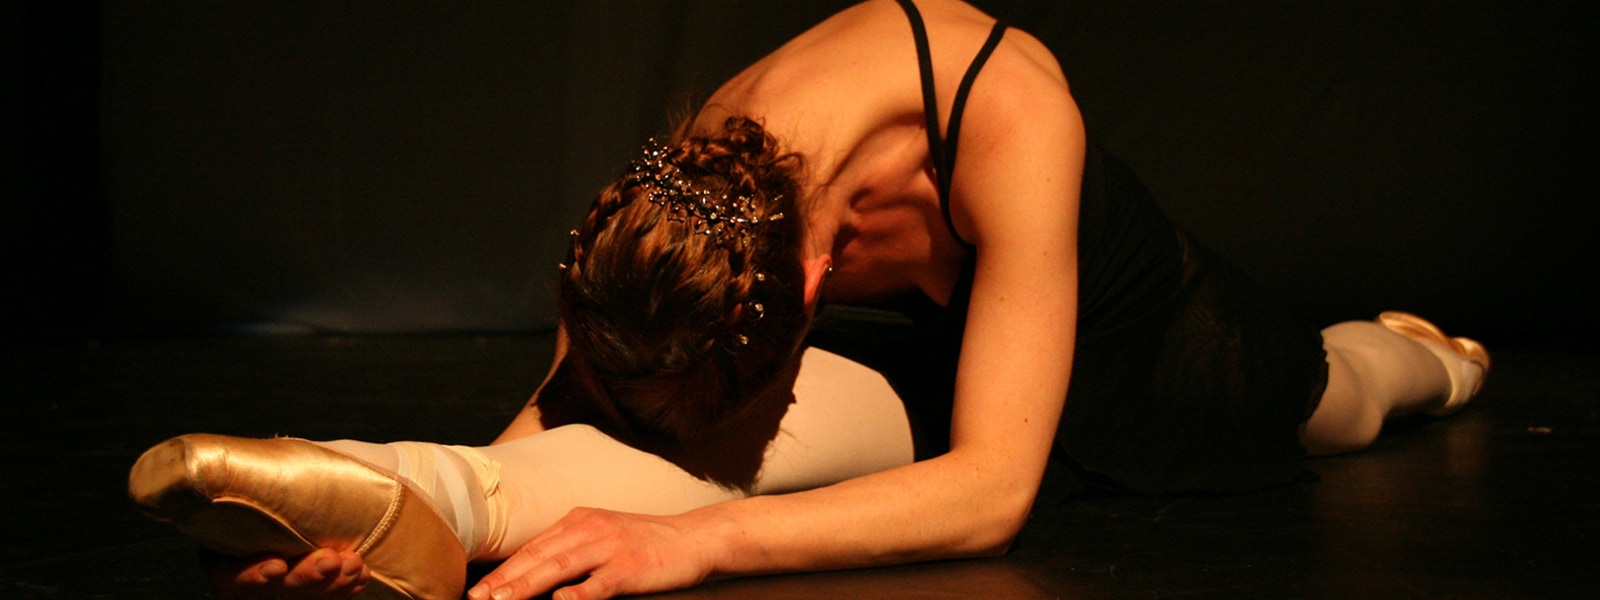 Das Bild zeigt eine Ballett-Tänzerin bei einem Spagat.